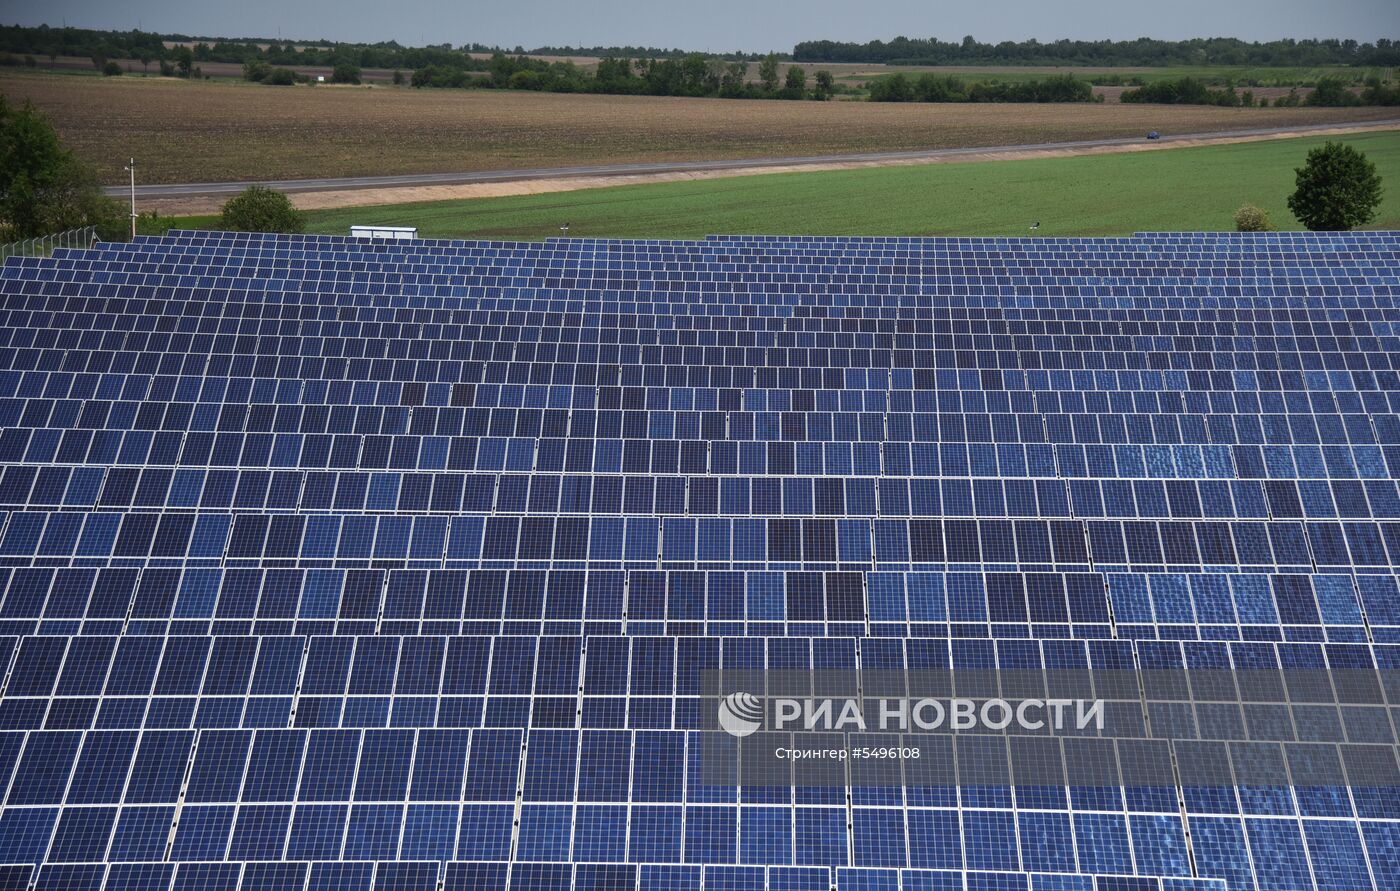 Открытие солнечной электростанции во Львовской области